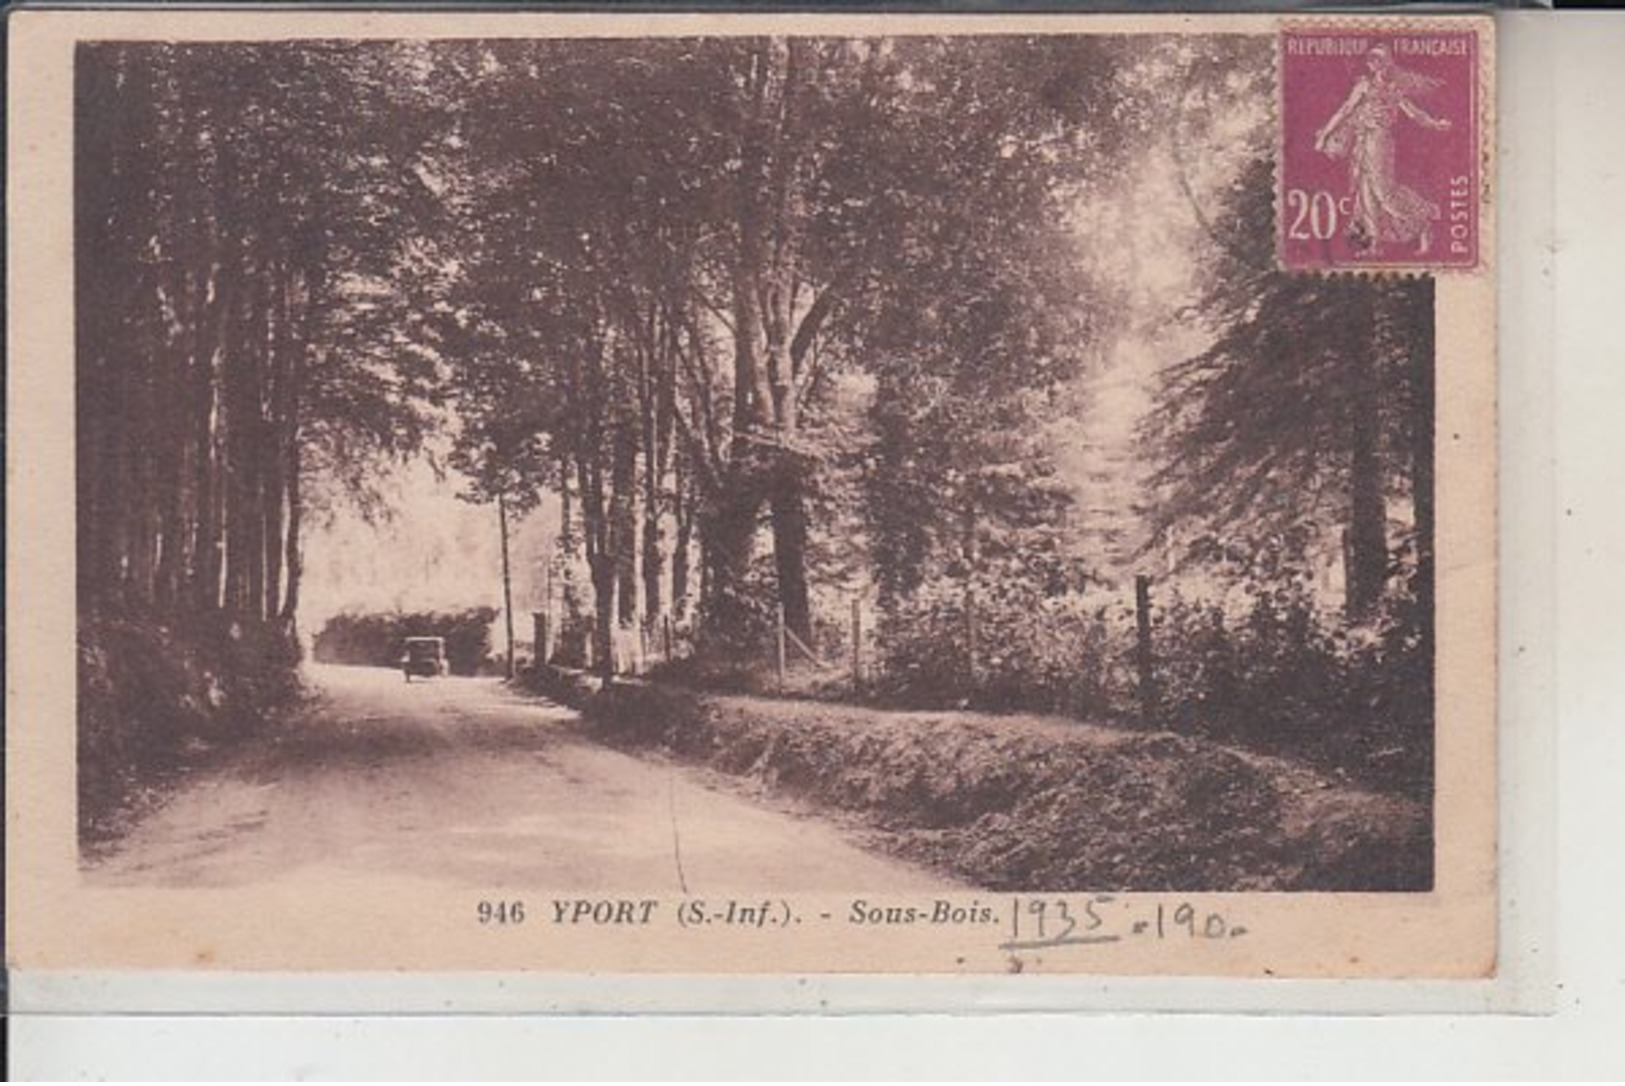 76 -  YPORT -  Sous-Bois  1935 - Yport